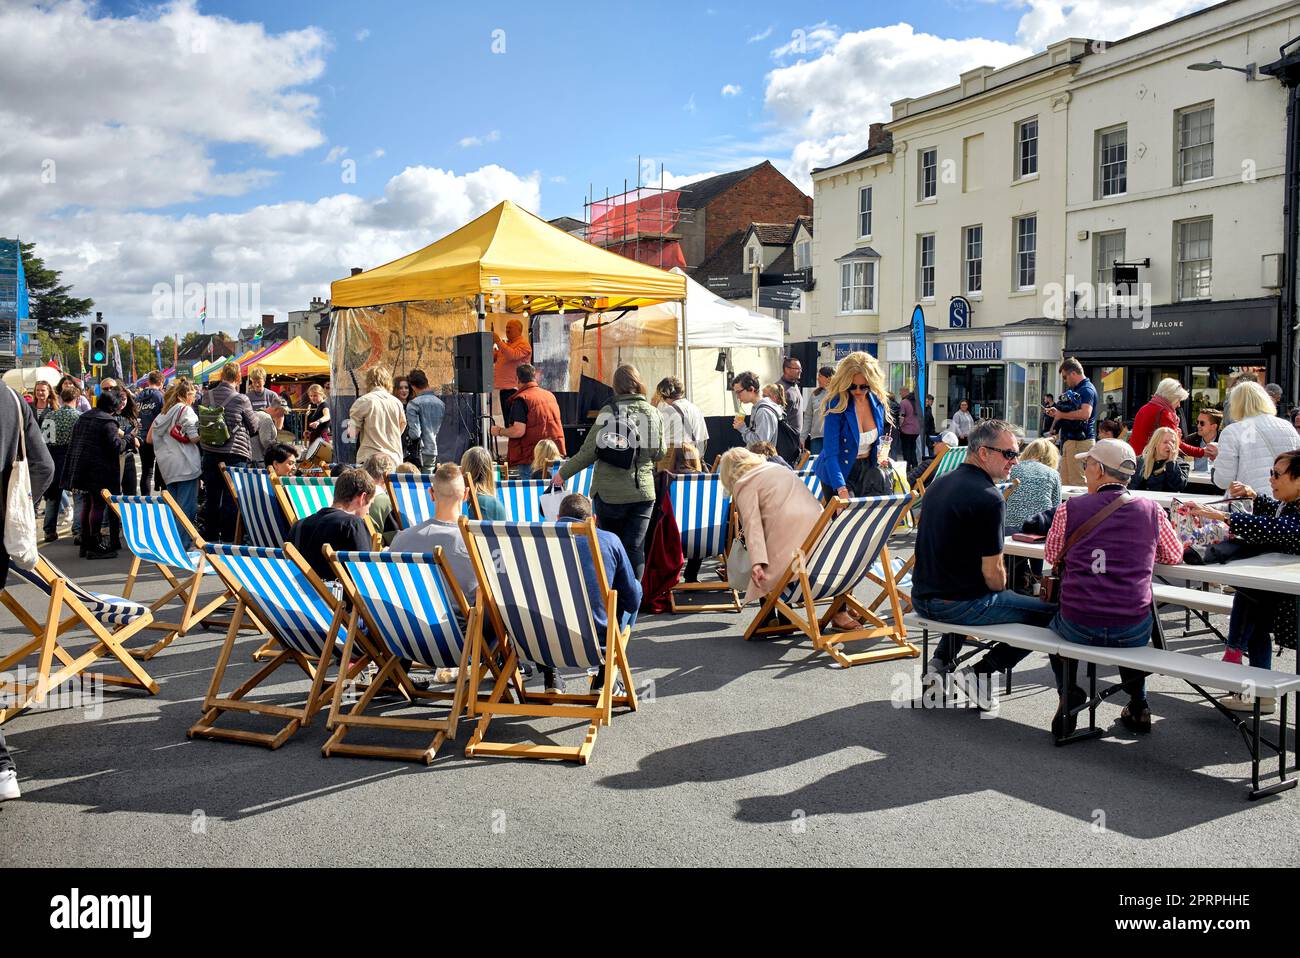 Le persone che mangiano e bevono all'aperto e che si godono il clima caldo in un festival di Street food all'aperto. Stratford Upon Avon Inghilterra Regno Unito Foto Stock